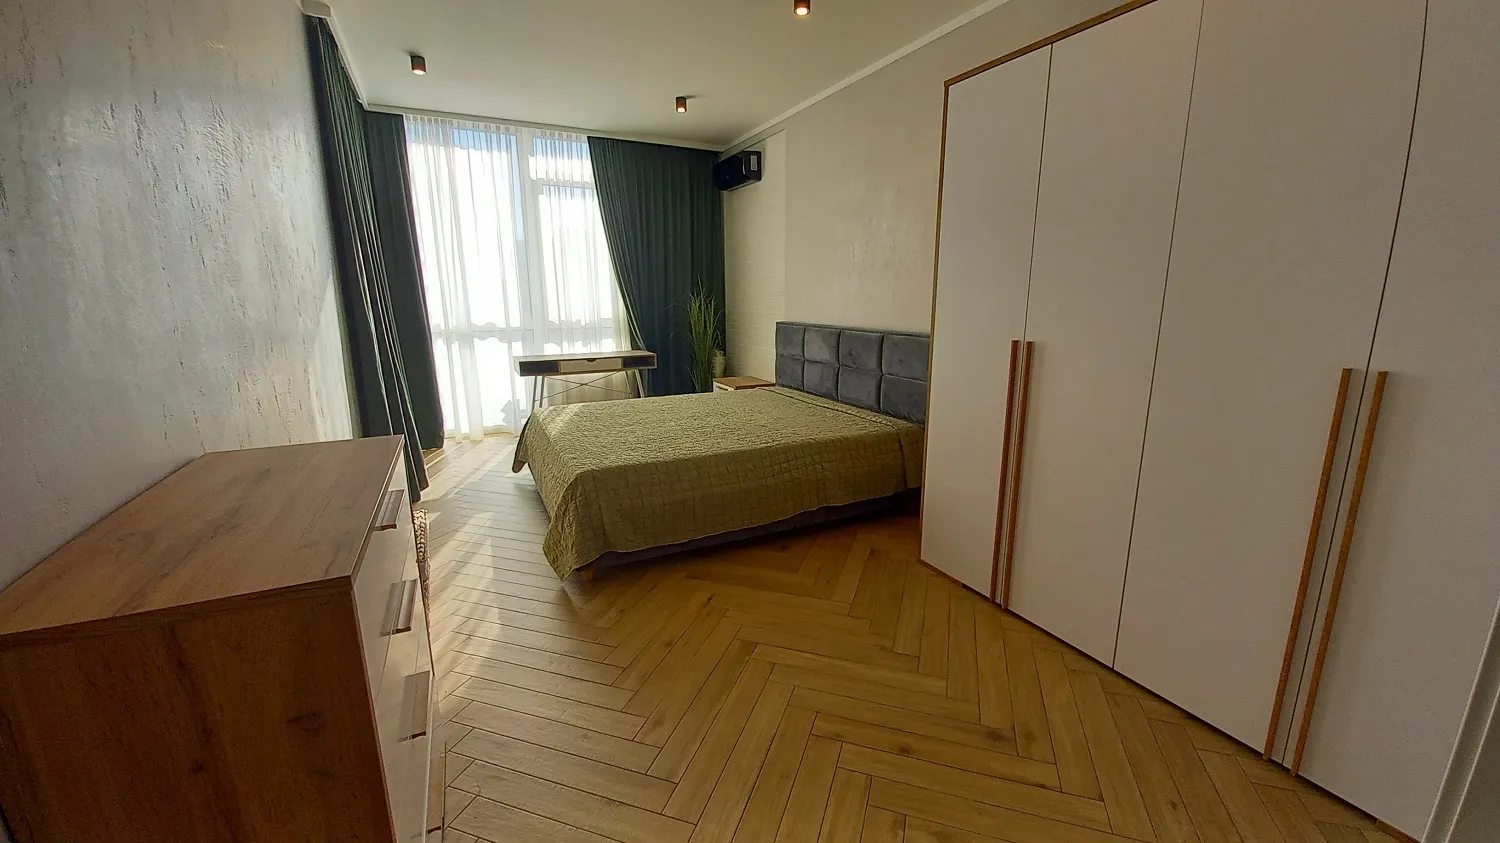 Сдам квартиру. 1 комната, 52 m², 5 этаж/9 этажей. Печерский район, Киев. 